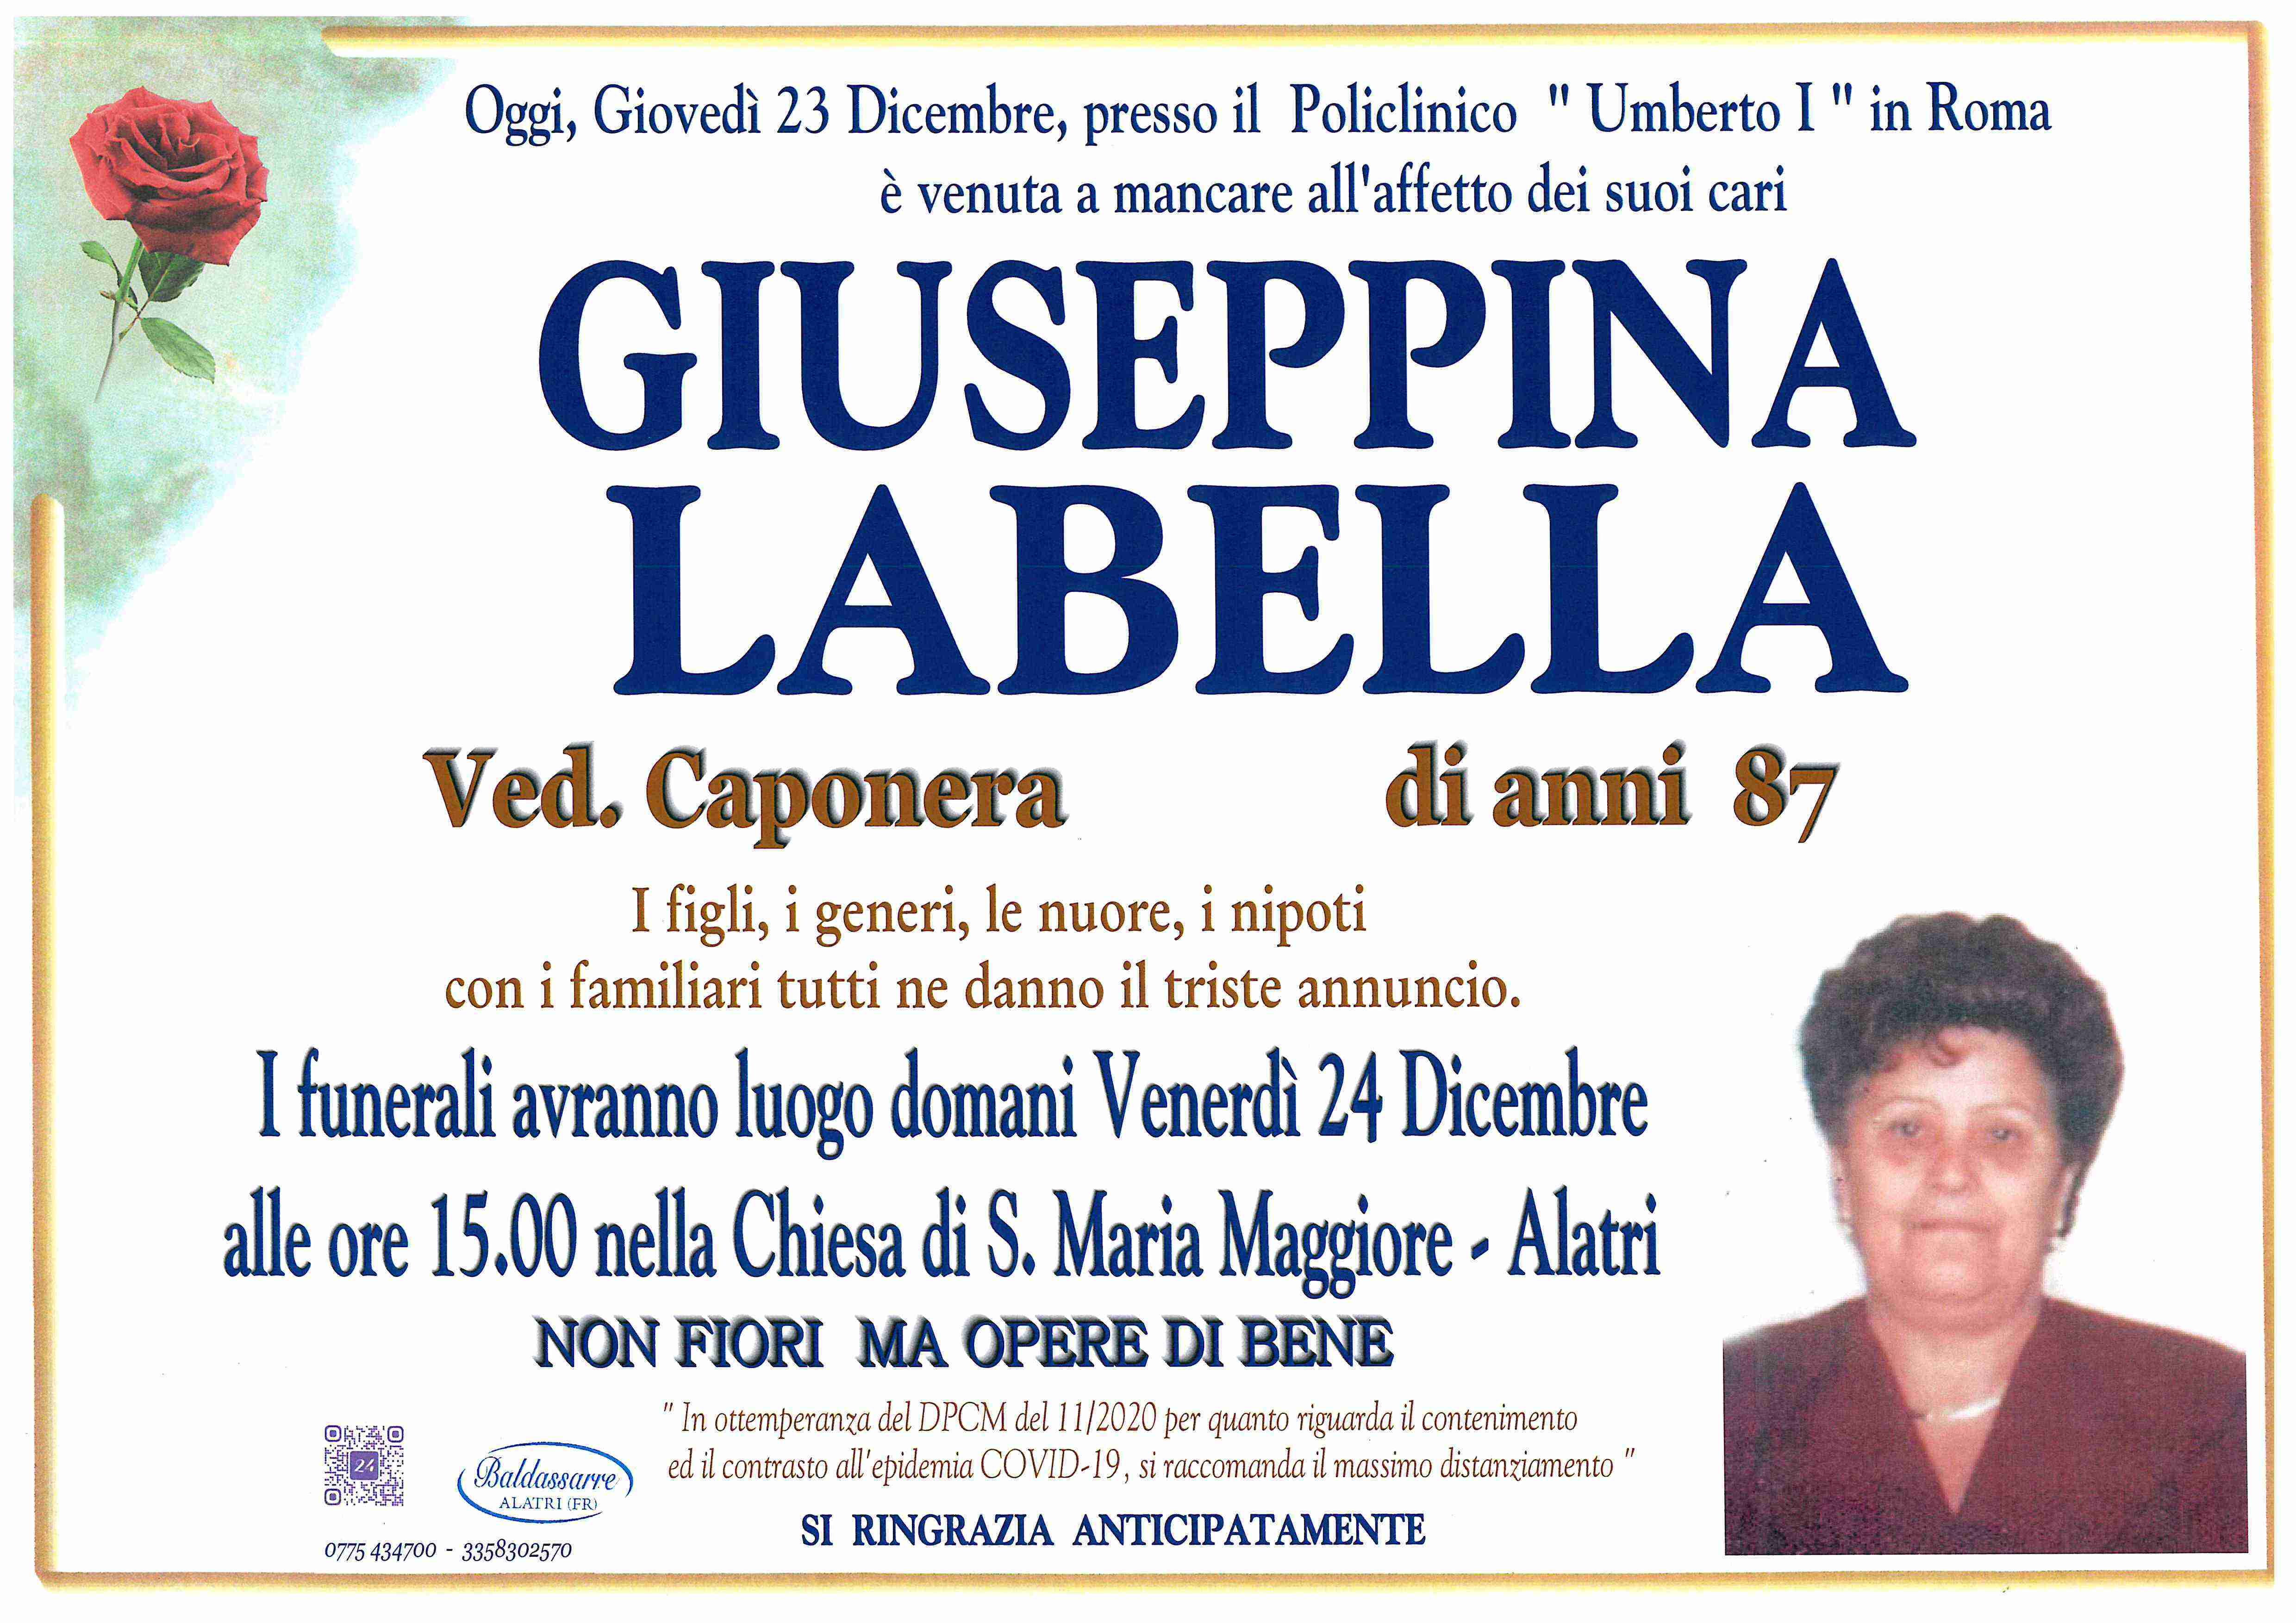 Giuseppina Labella